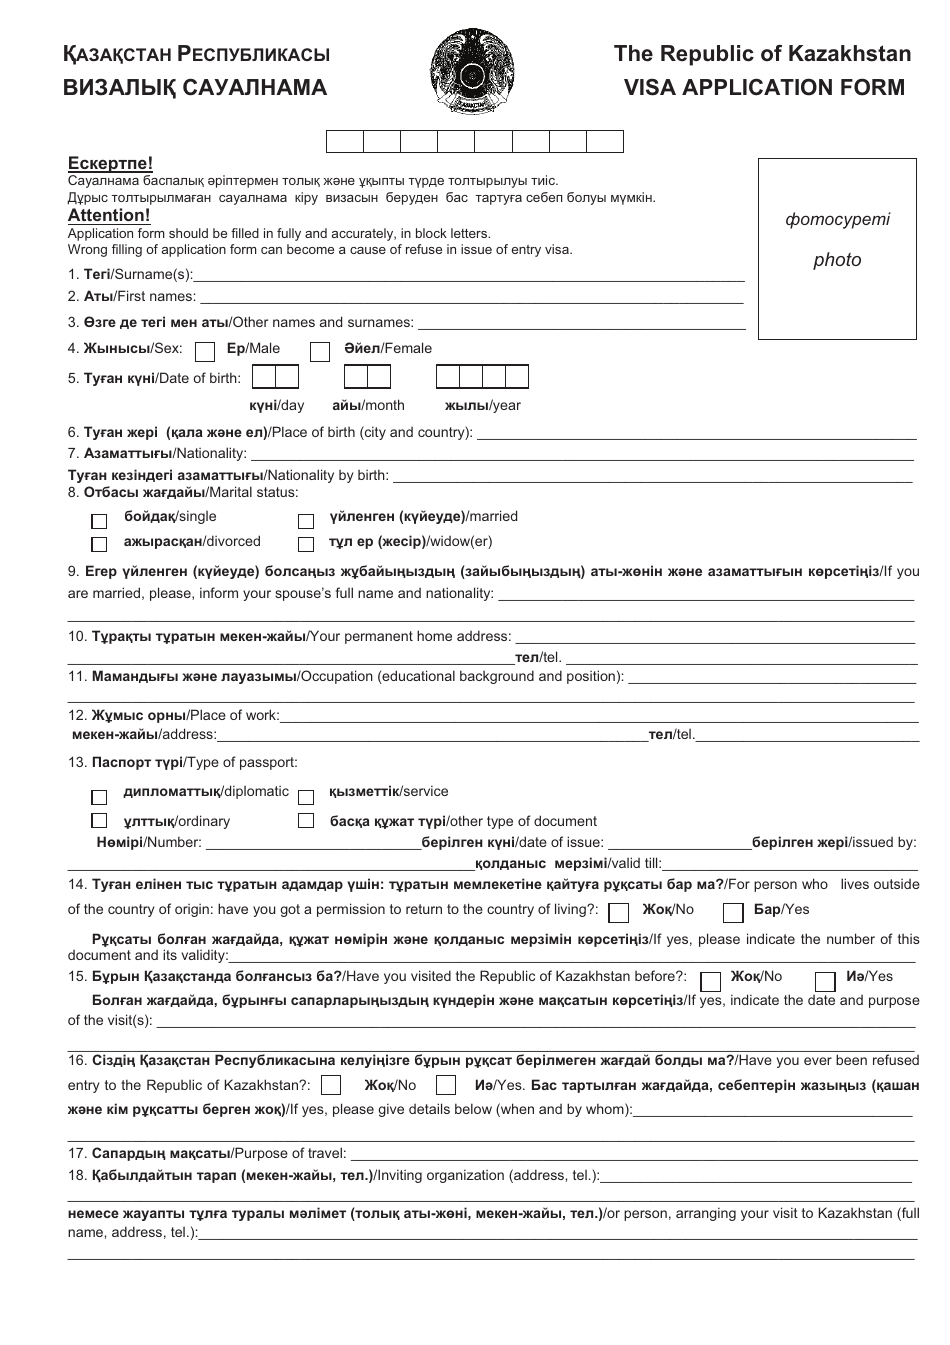 Kazakhstan Visa Application Form (English / Kazakh), Page 1